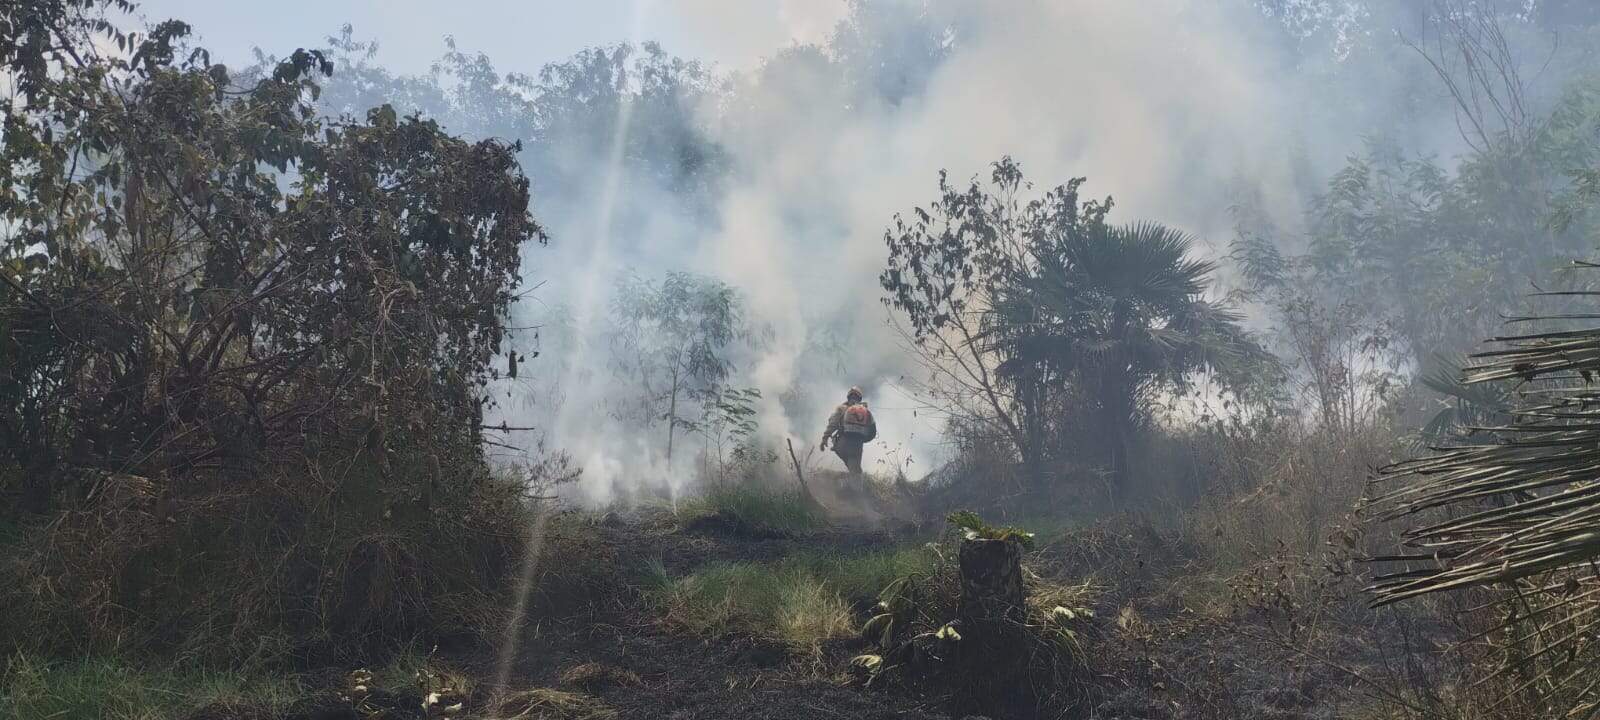 Incêndio consome um hectare de mata durante a tarde 